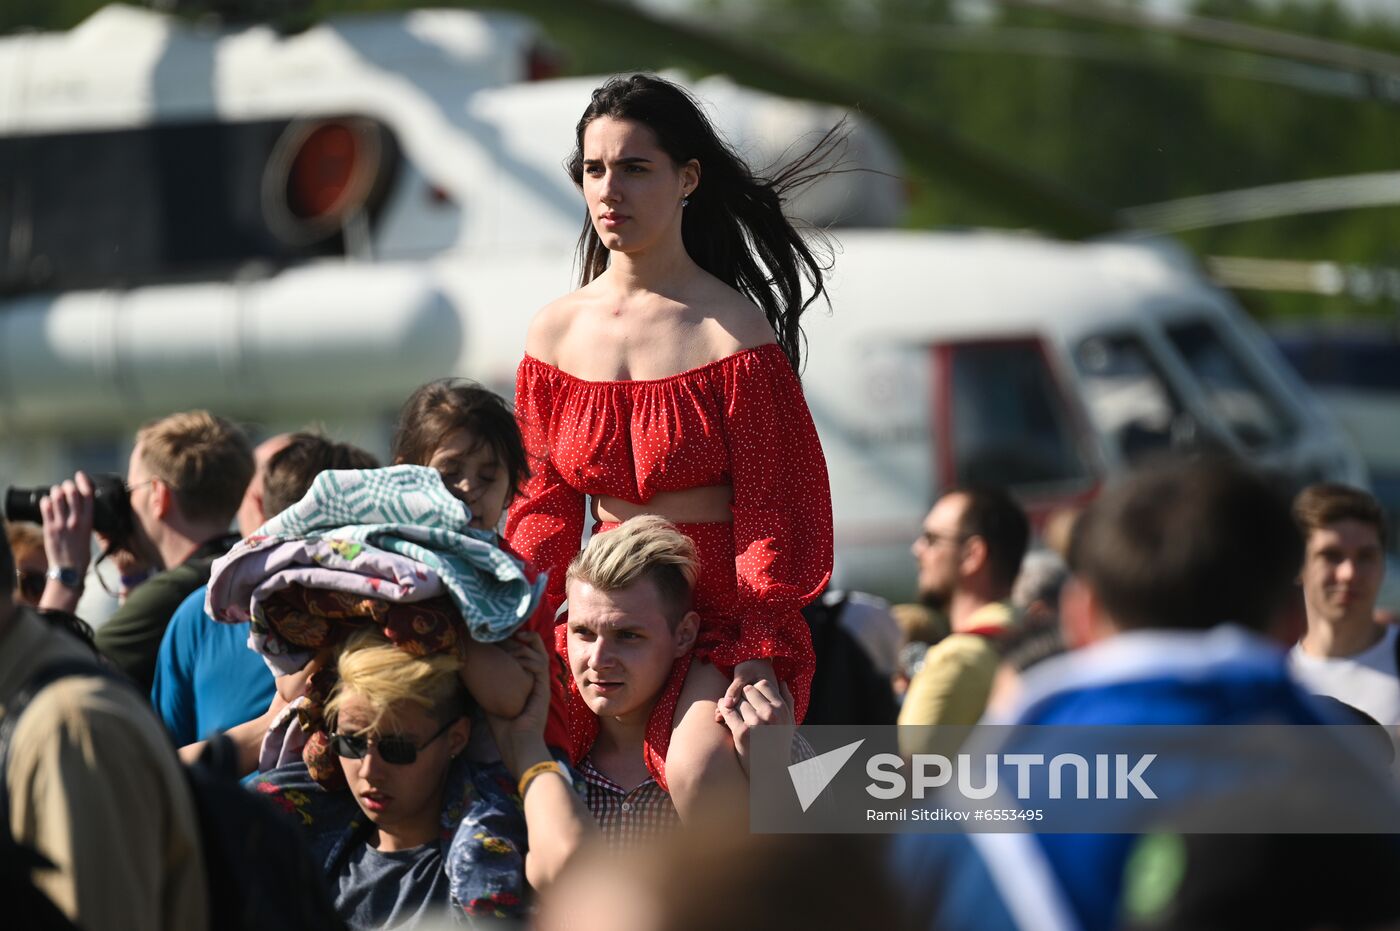 Russia Aviation Festival